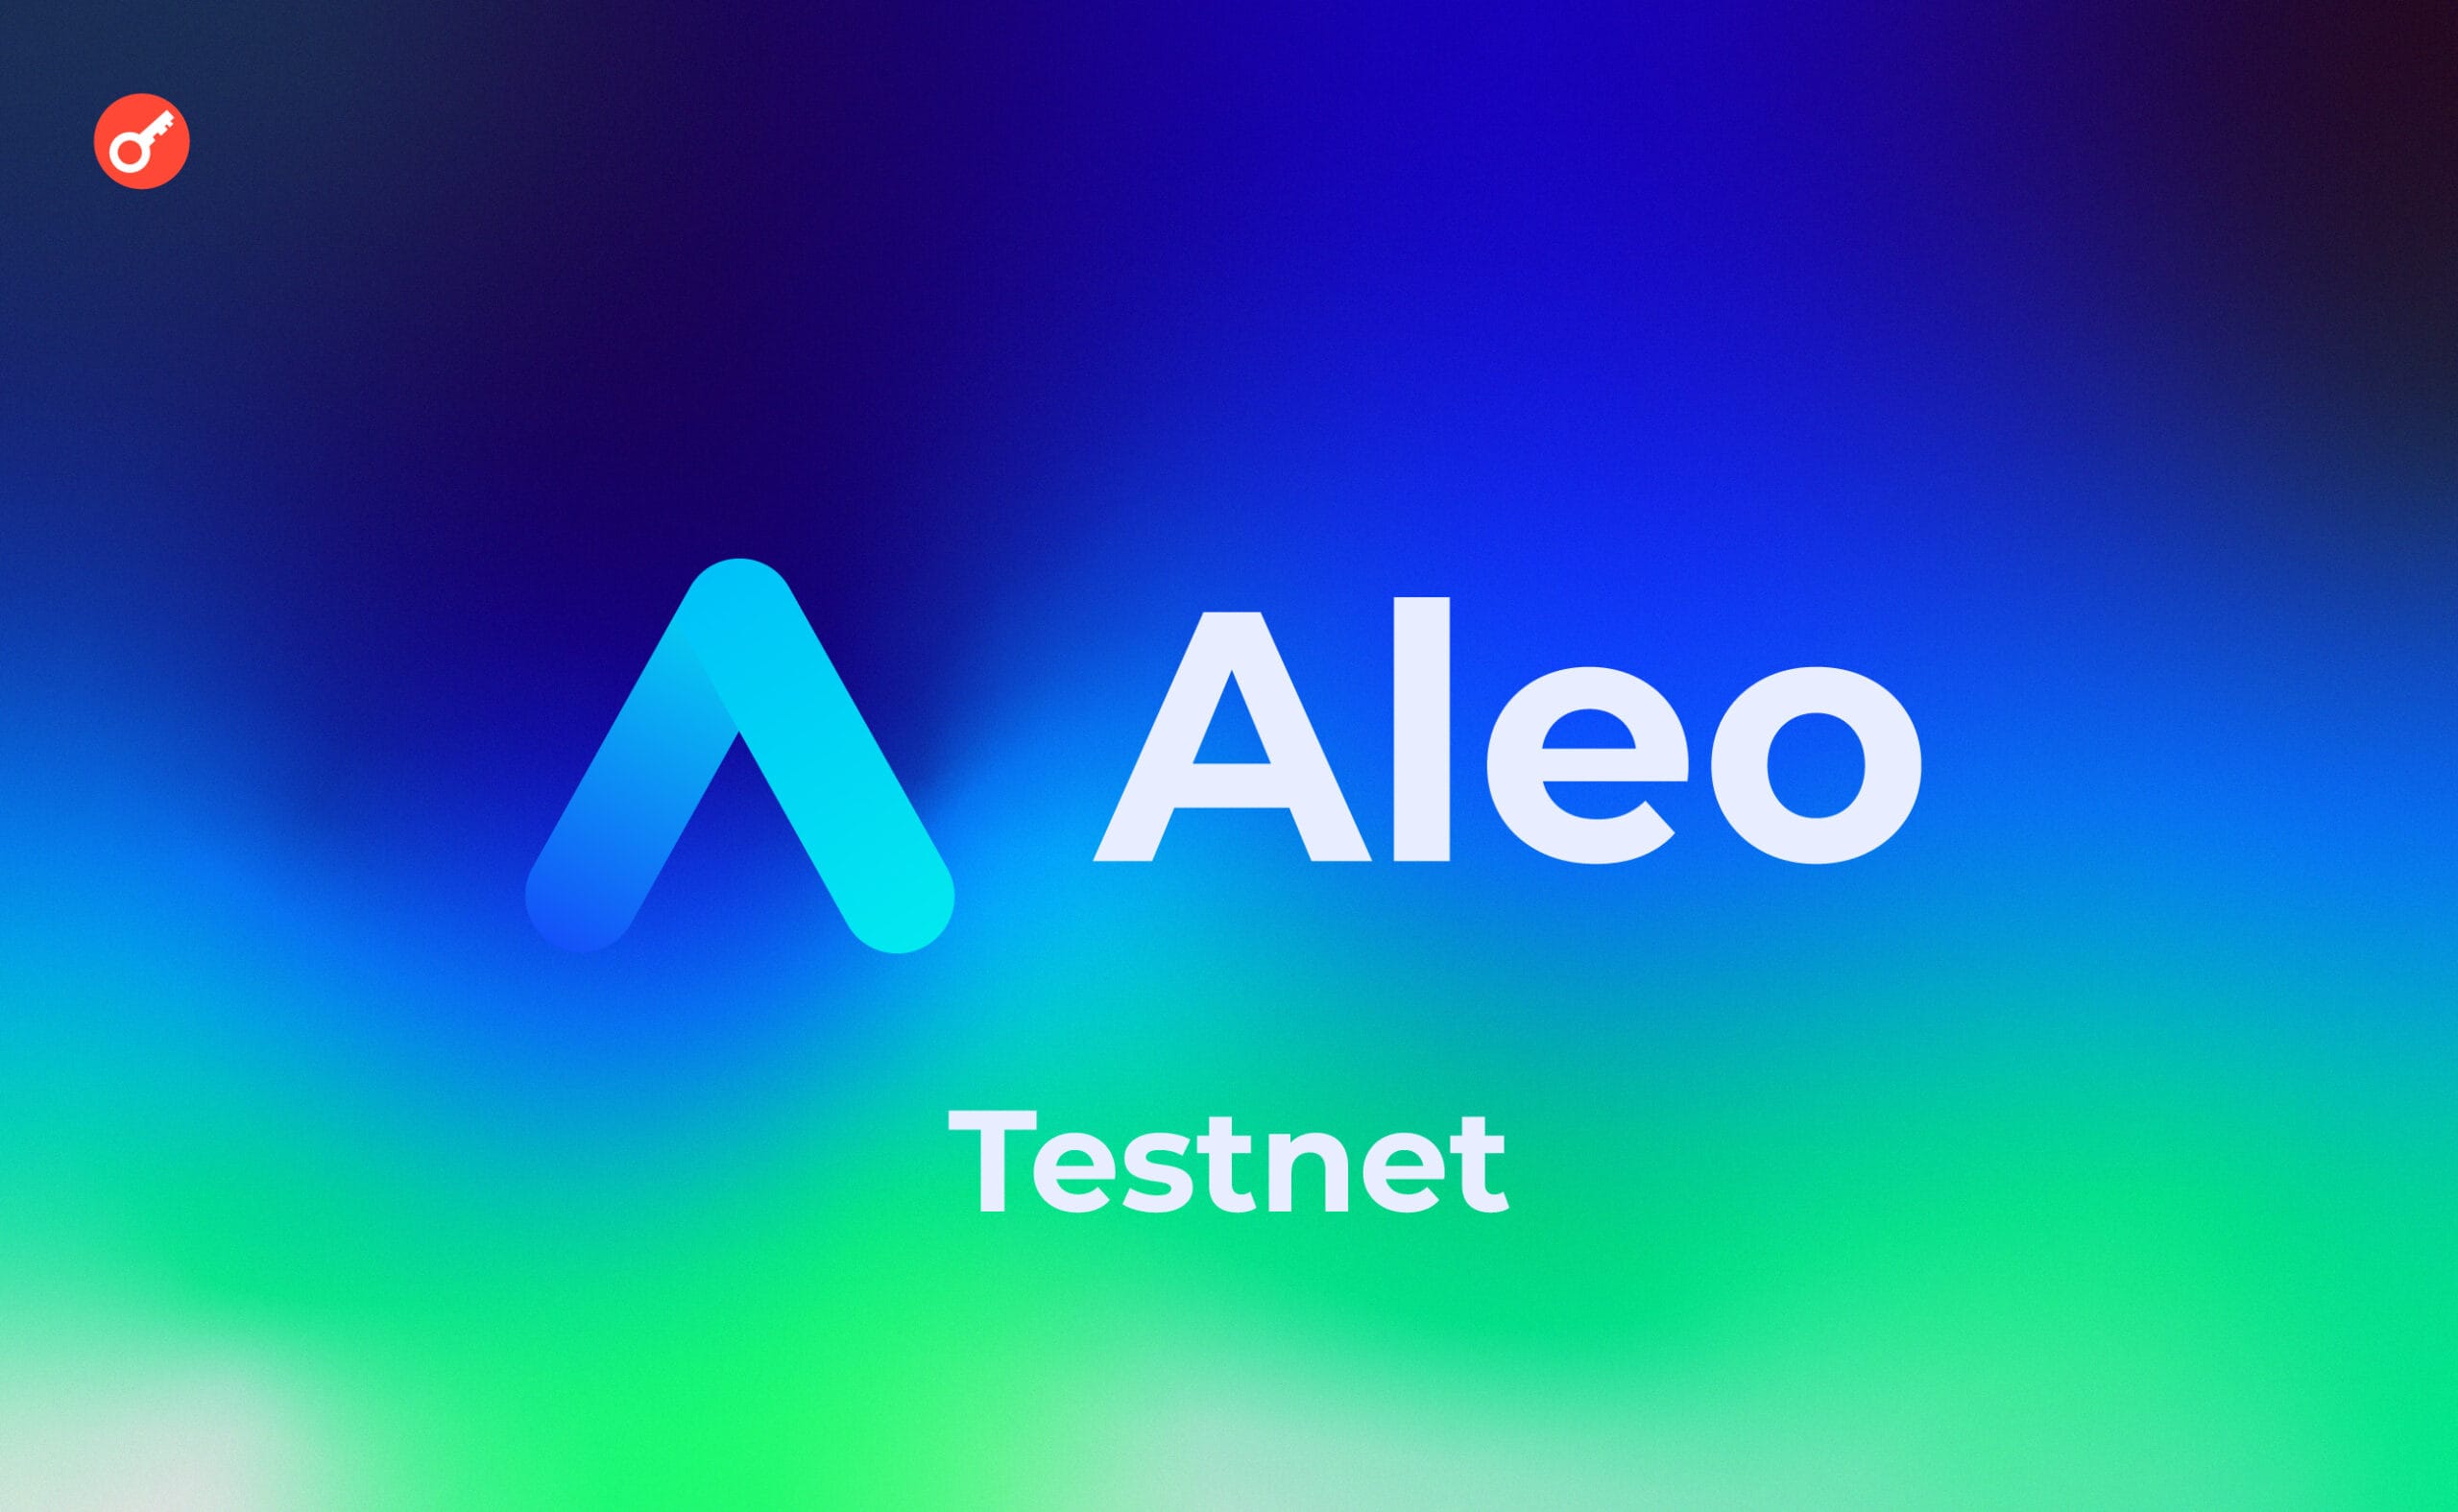 Aleo — принимаем участие в Testnet. Заглавный коллаж статьи.